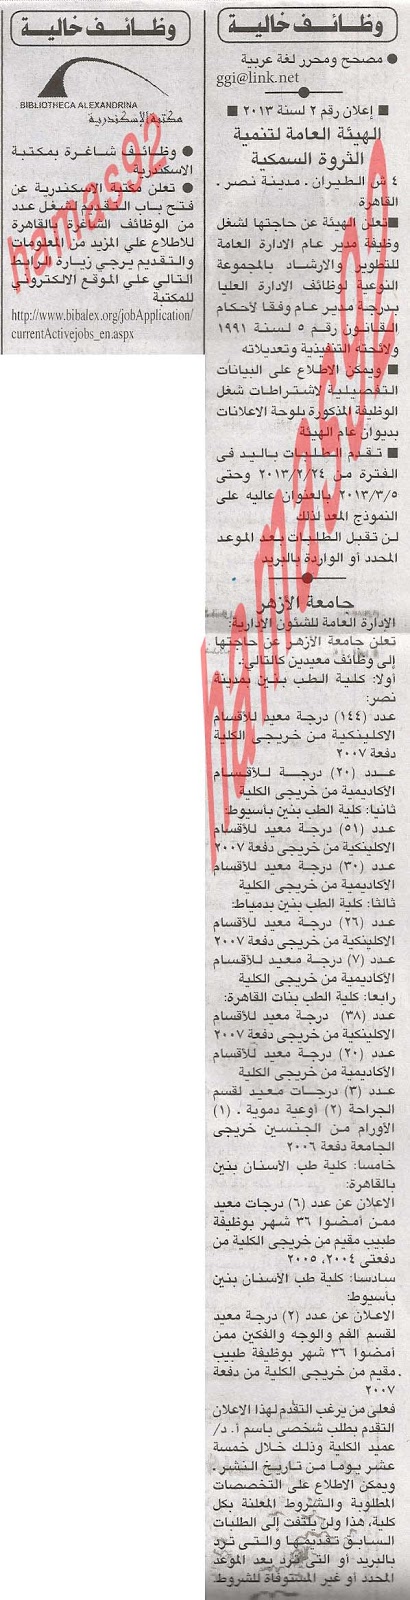 وظائف خالية من جريدة الاهرام المصرية اليوم الخميس 21/2/2013 %D8%A7%D9%84%D8%A7%D9%87%D8%B1%D8%A7%D9%85+1